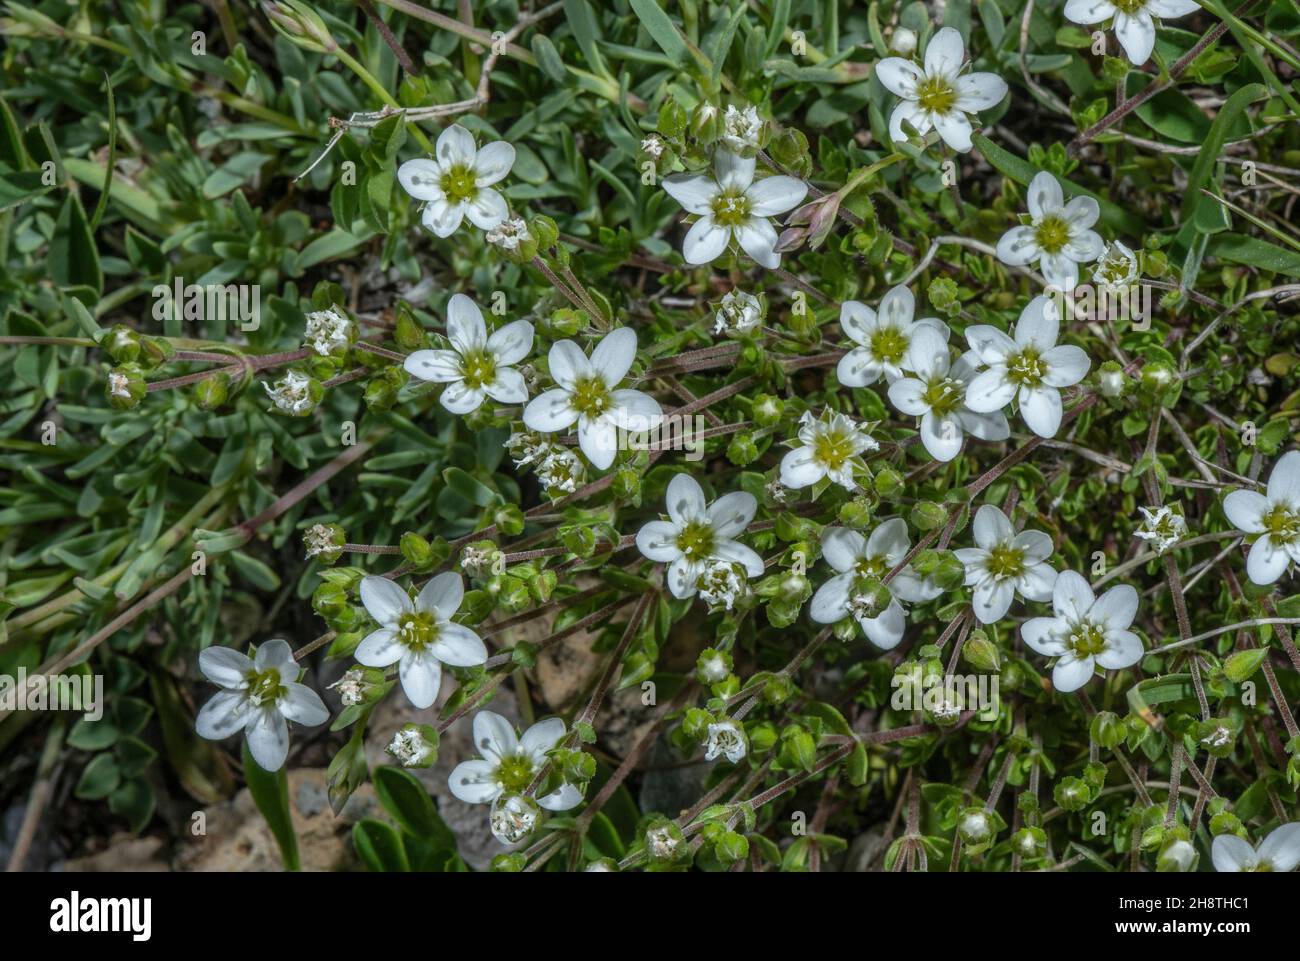 Fringed sandwort, Arenaria ciliata, in flower in alpine pasture. Stock Photo